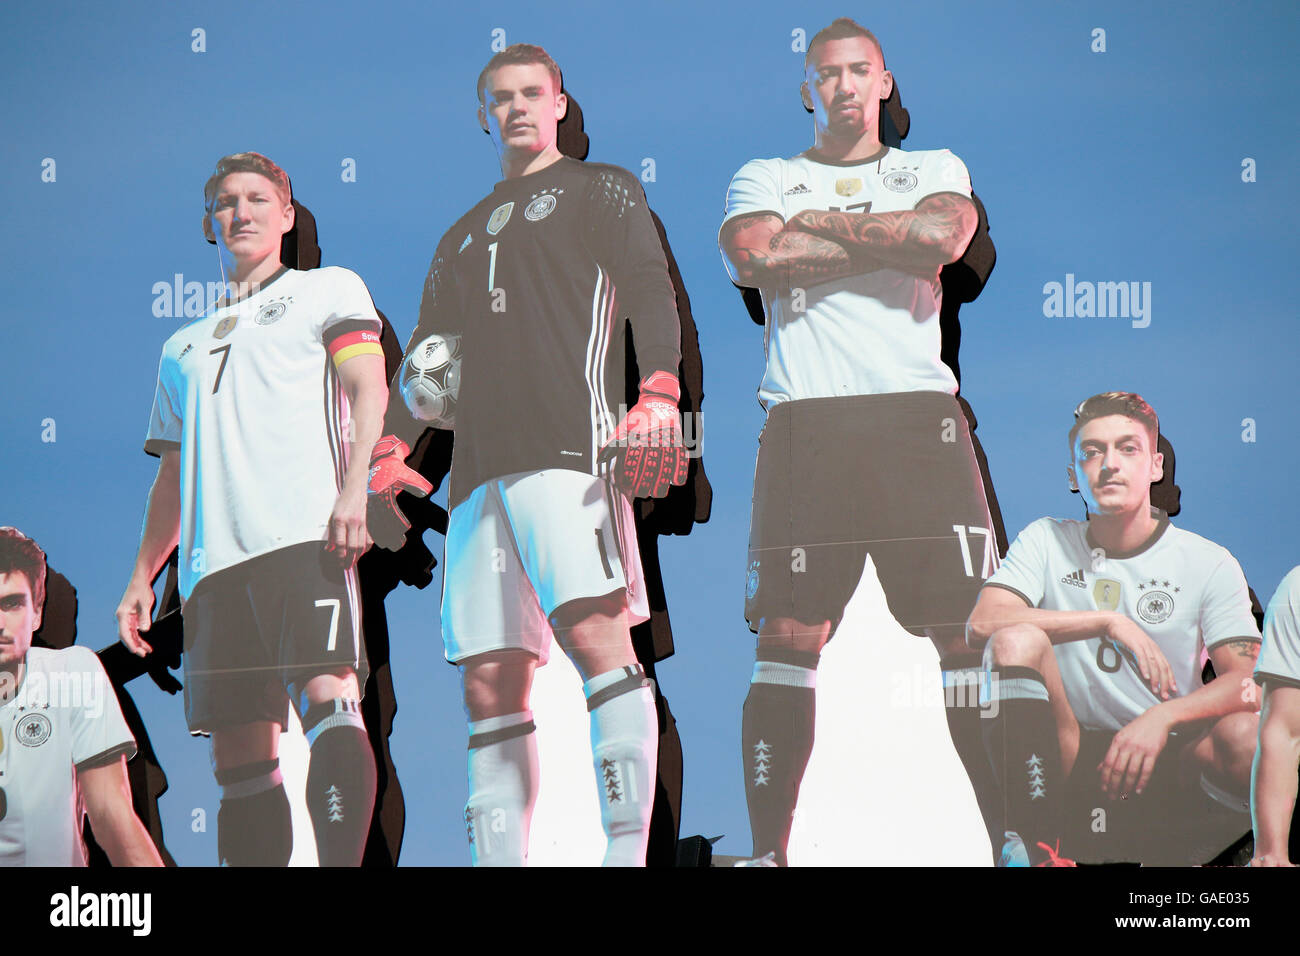 Bilder von Mats Hummels, Bastian SCHWEINSTEIGER, Manuel Neuer, Jerome Boateng, Mesut Oezil - 'Die Mannschaft' - Impressionen: Foto Stock